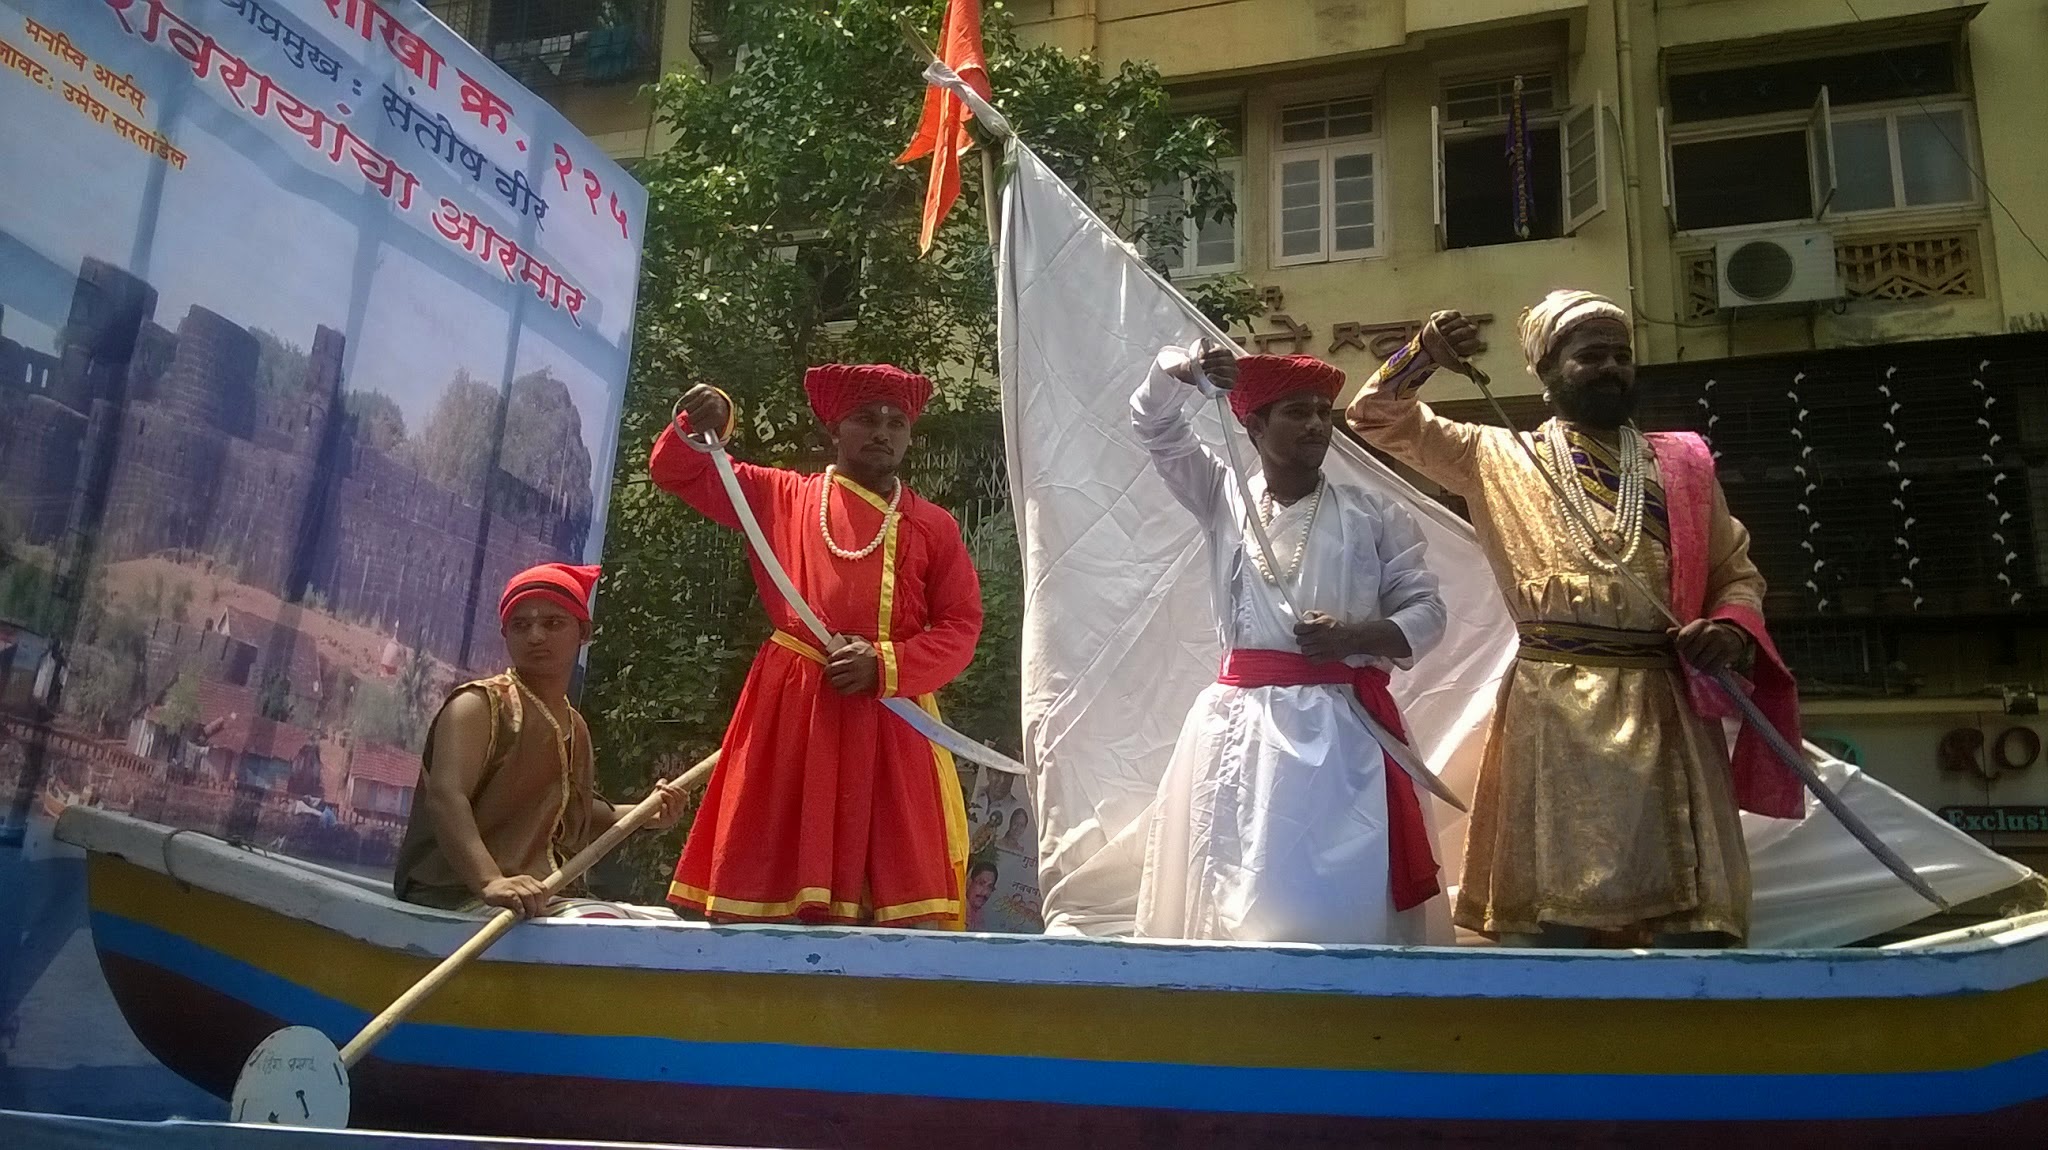 Gudhi padva Procession